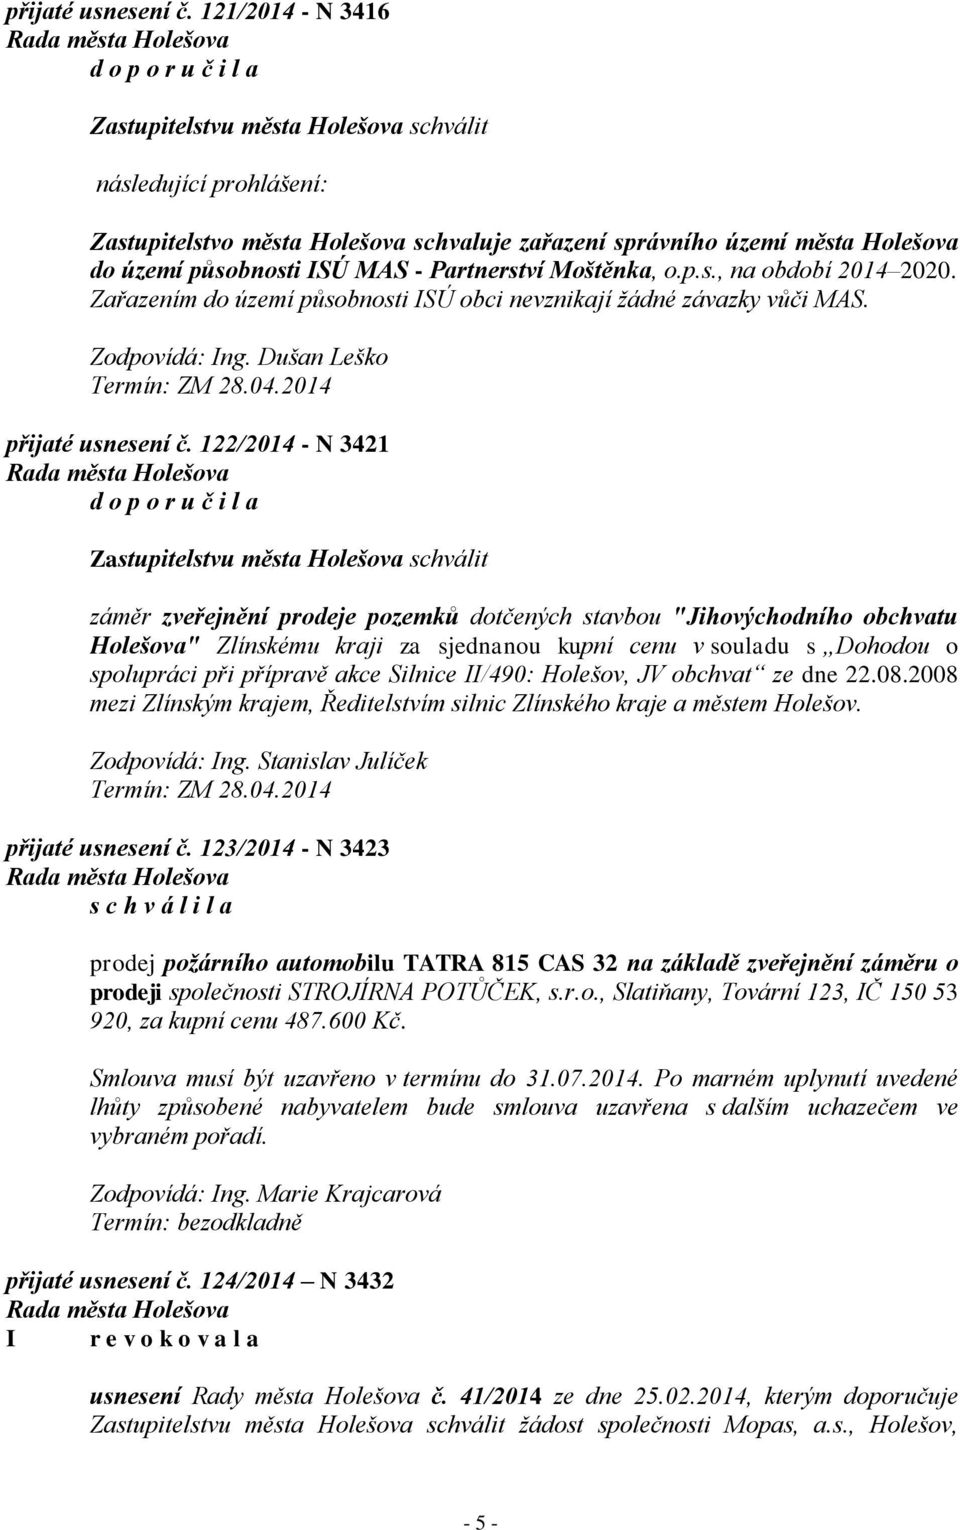 122/2014 - N 3421 záměr zveřejnění prodeje pozemků dotčených stavbou "Jihovýchodního obchvatu Holešova" Zlínskému kraji za sjednanou kupní cenu v souladu s Dohodou o spolupráci při přípravě akce